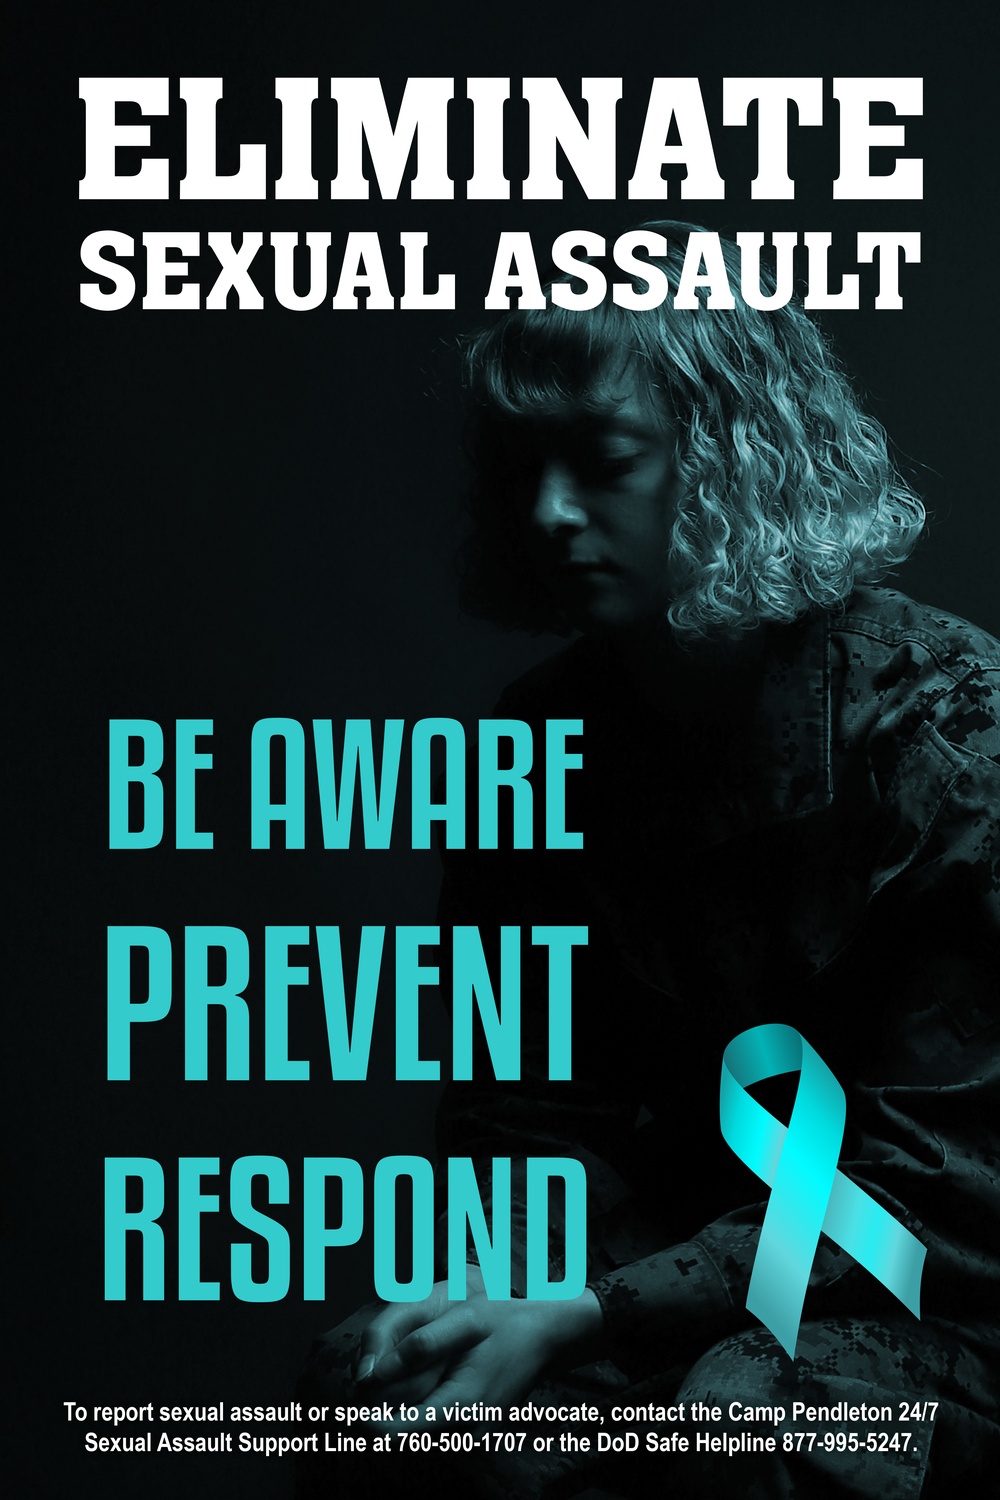 Sexual Assault Awareness: Eliminate 1